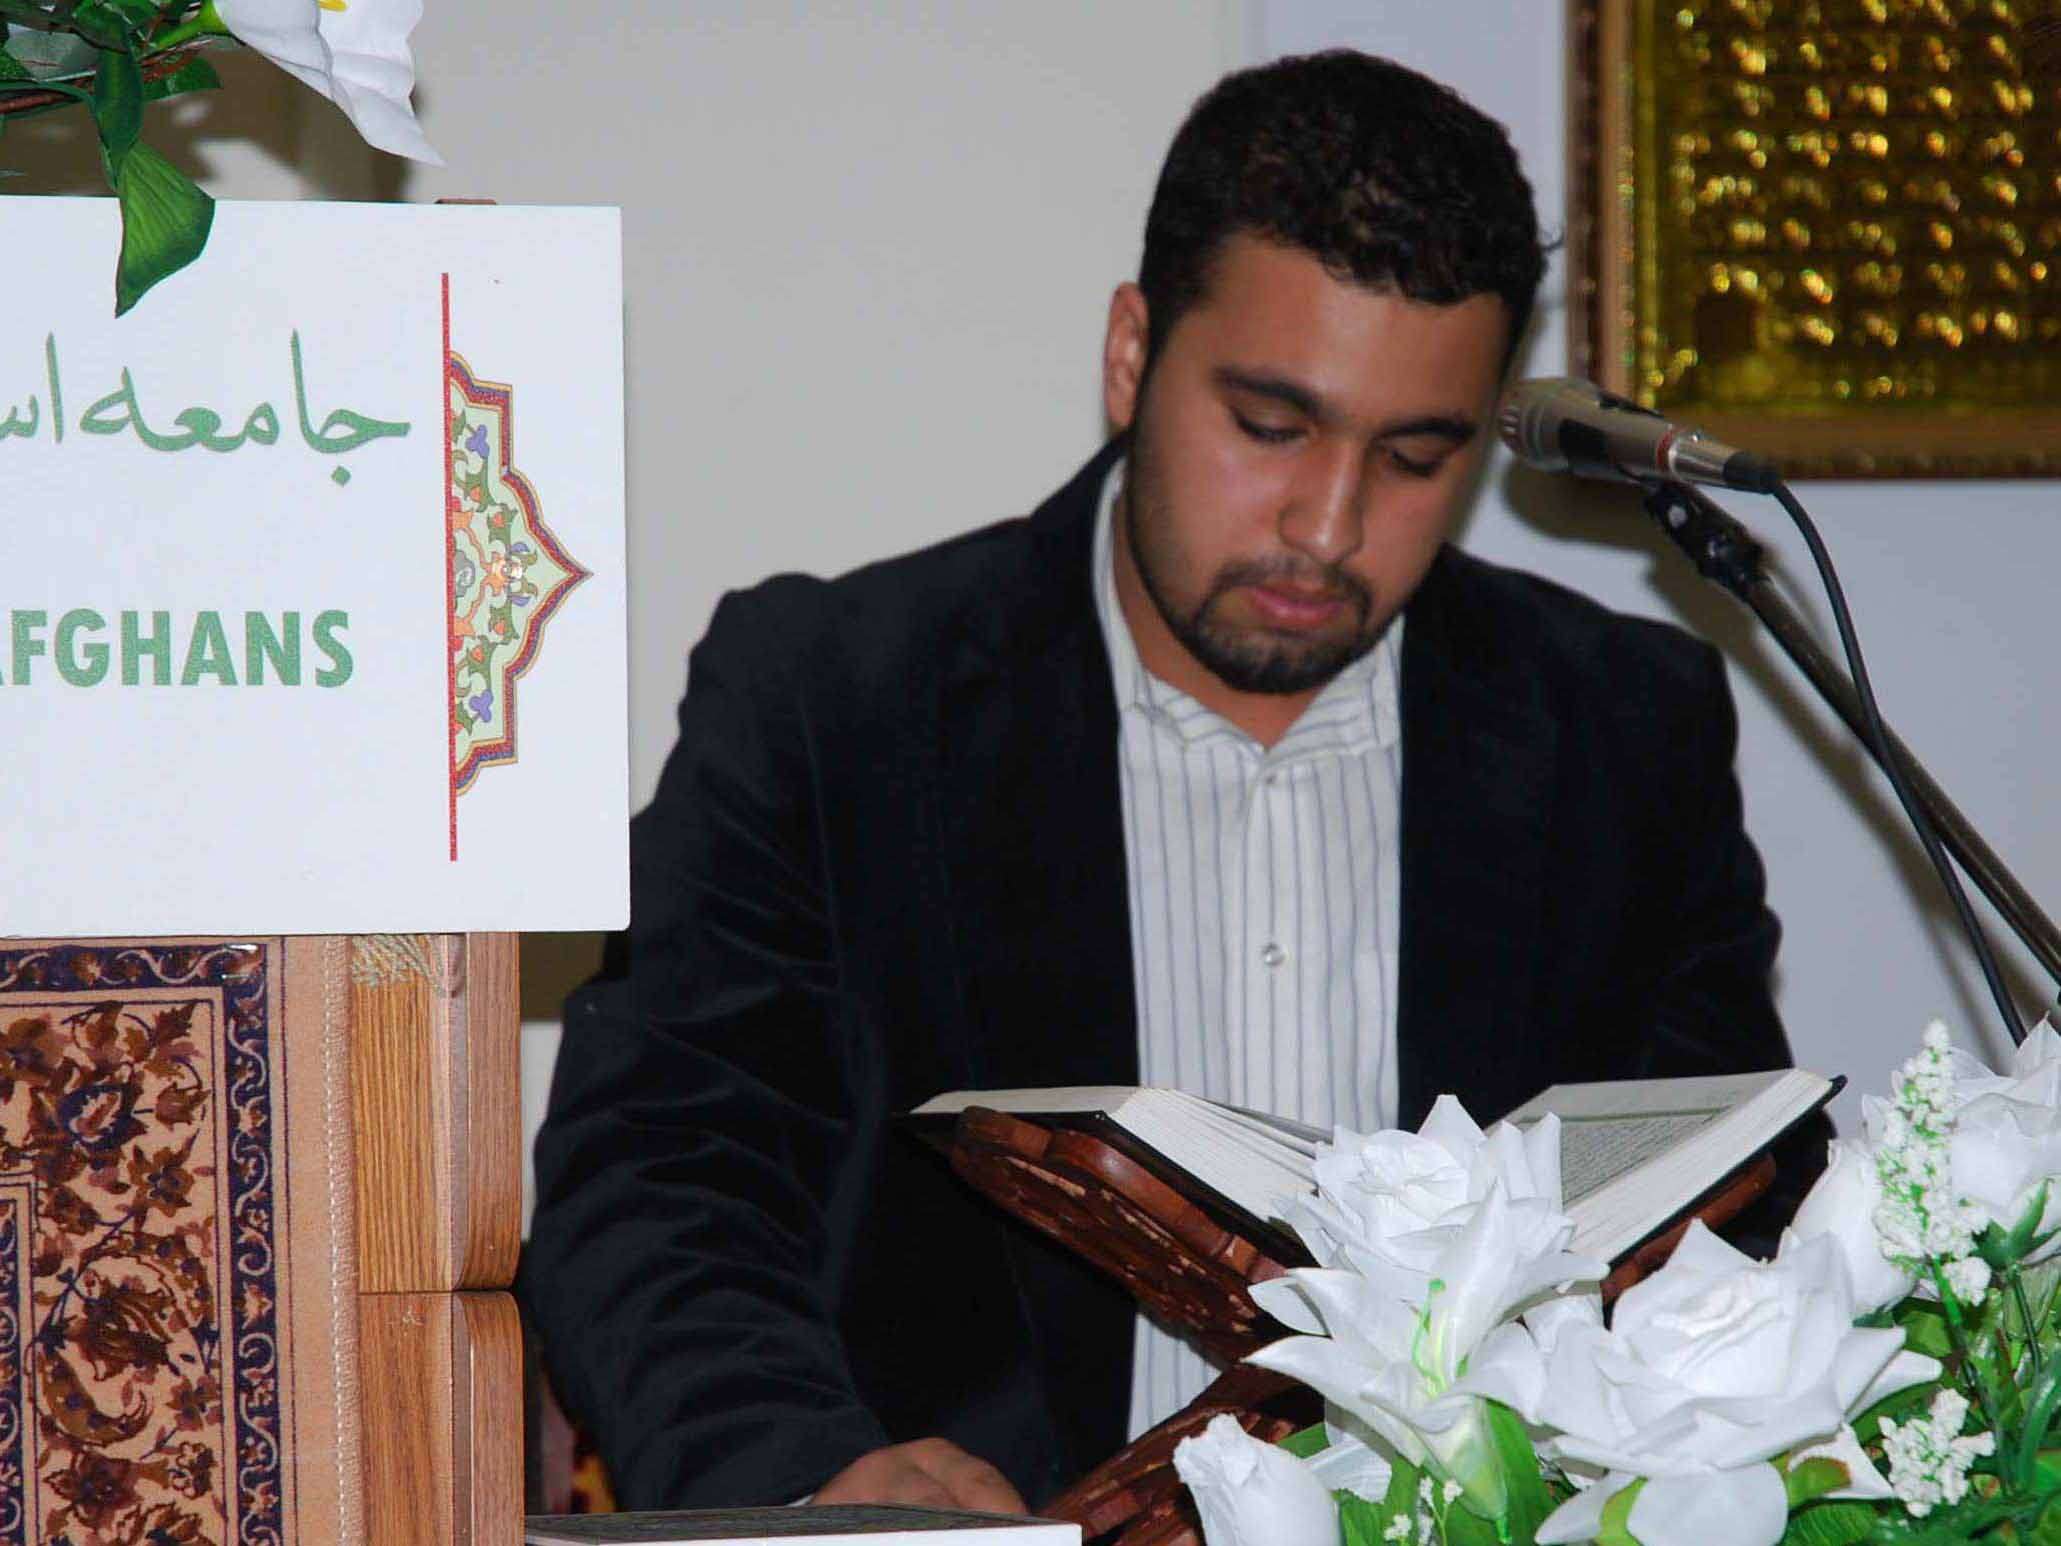 سنت حسنه تلاوت قرآن در كشور افغانستان